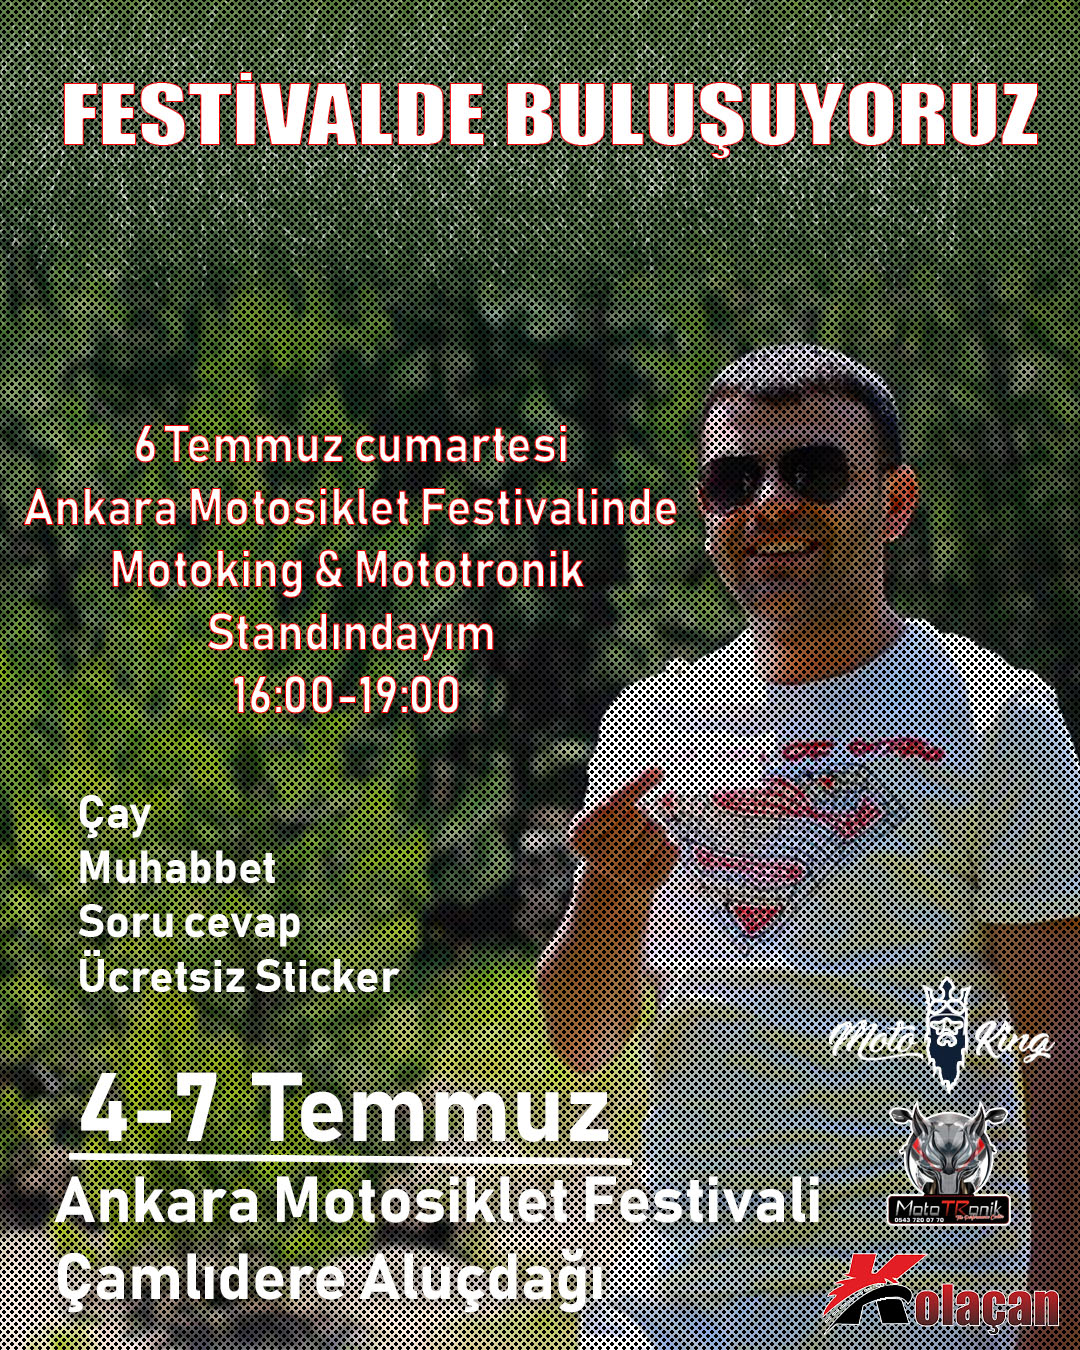 Ankara Motosiklet Festivalinde buluşuyoruz